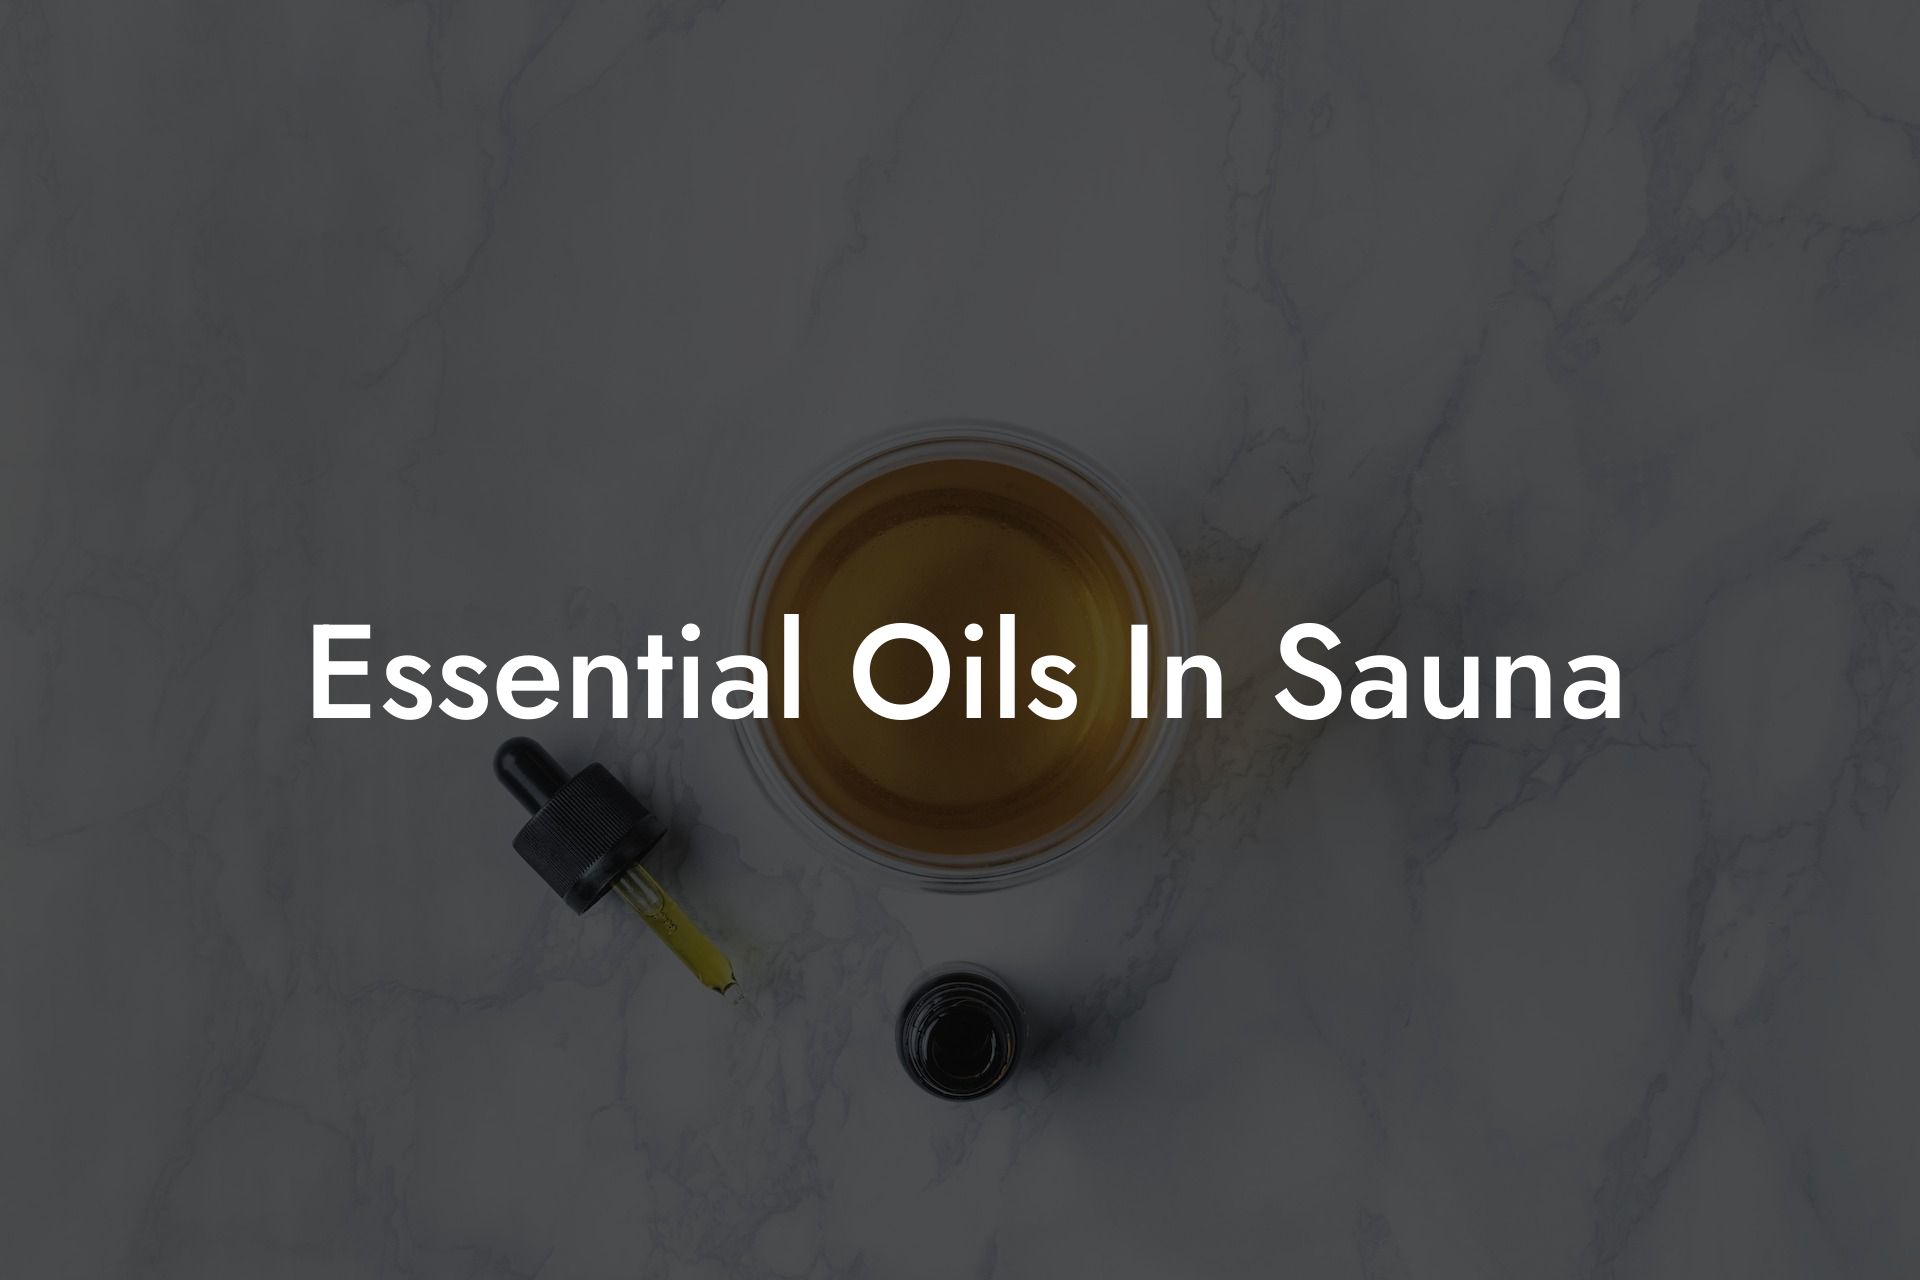 Essential Oils In Sauna